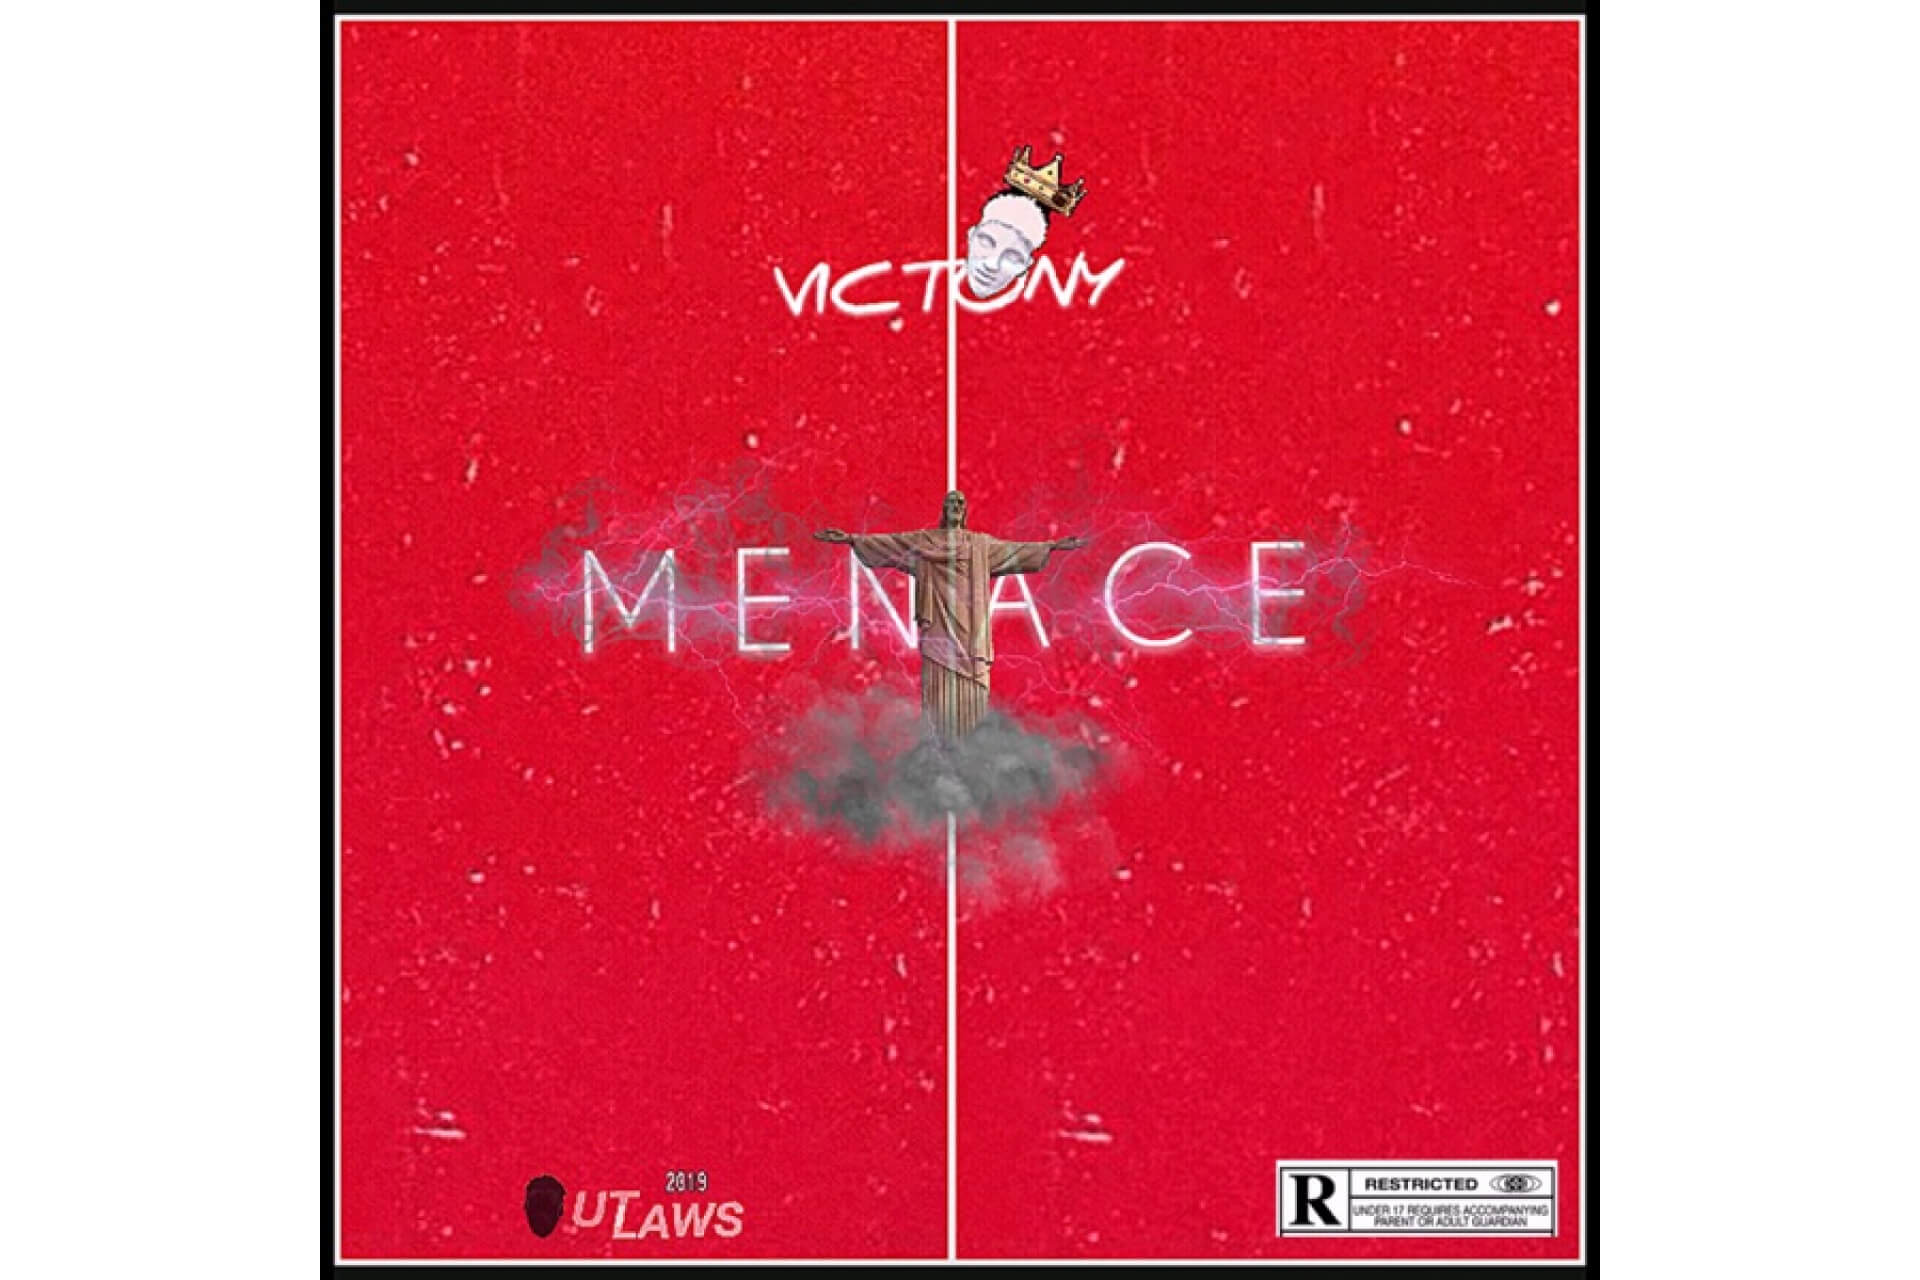 Victony - Menace